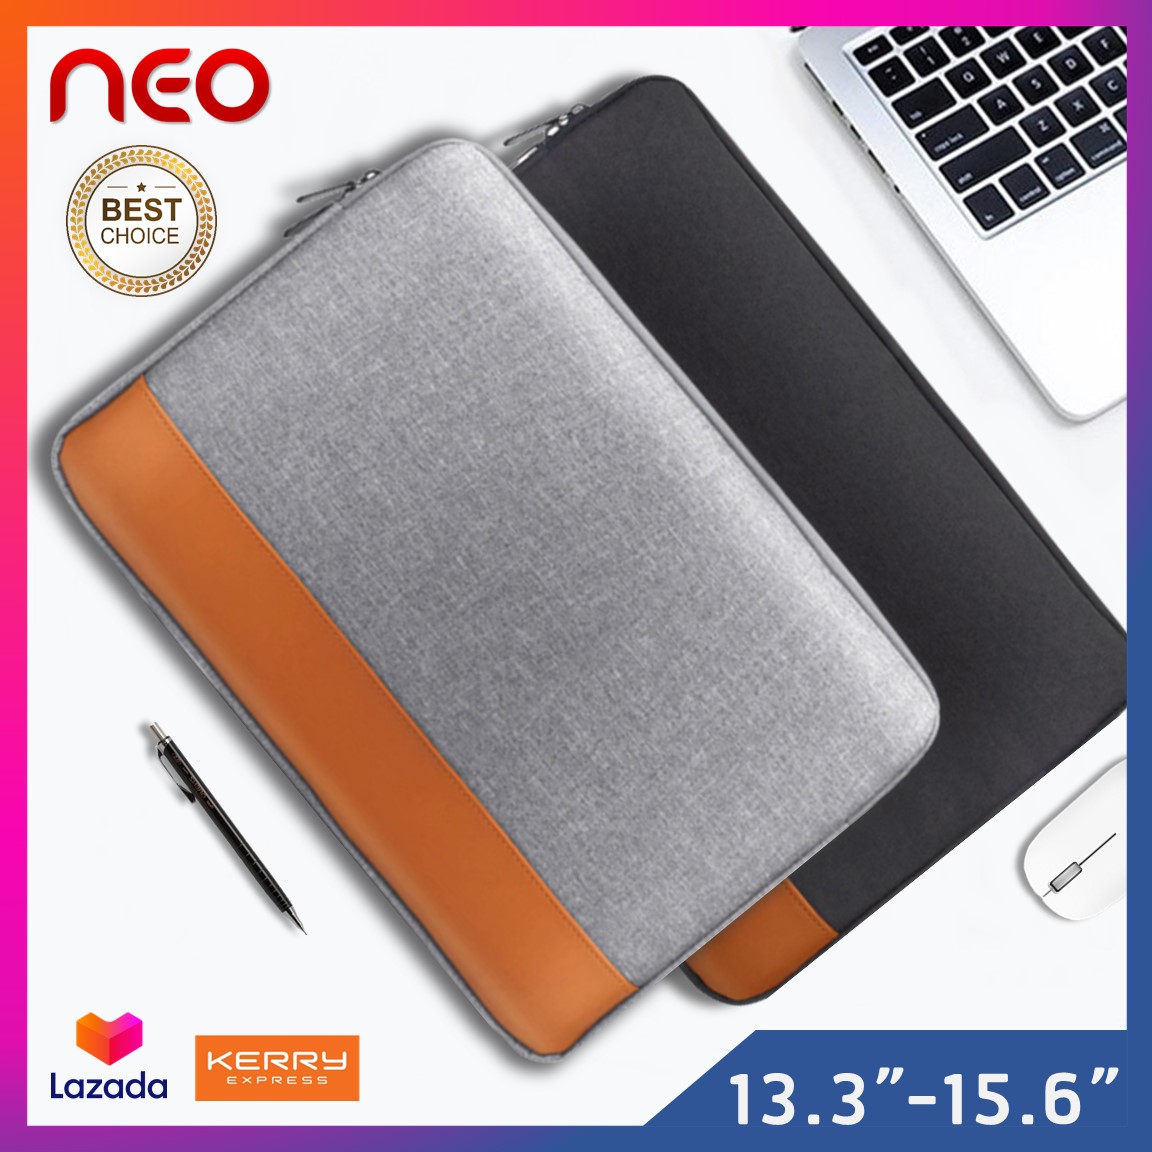 NEO กระเป๋าโน๊ตบุ๊ค soft case ขนาด13-15.6นิ้ว  เคสโน๊ตบุ๊ค เคสMacbook Air Pro  ซองใส่โน๊ตบุ๊ค ซองแล็ปท็อป ซองใส่ไอแพด ซองผ้าใส่แท็บเล็ต Laptop Bag  Macbook Case